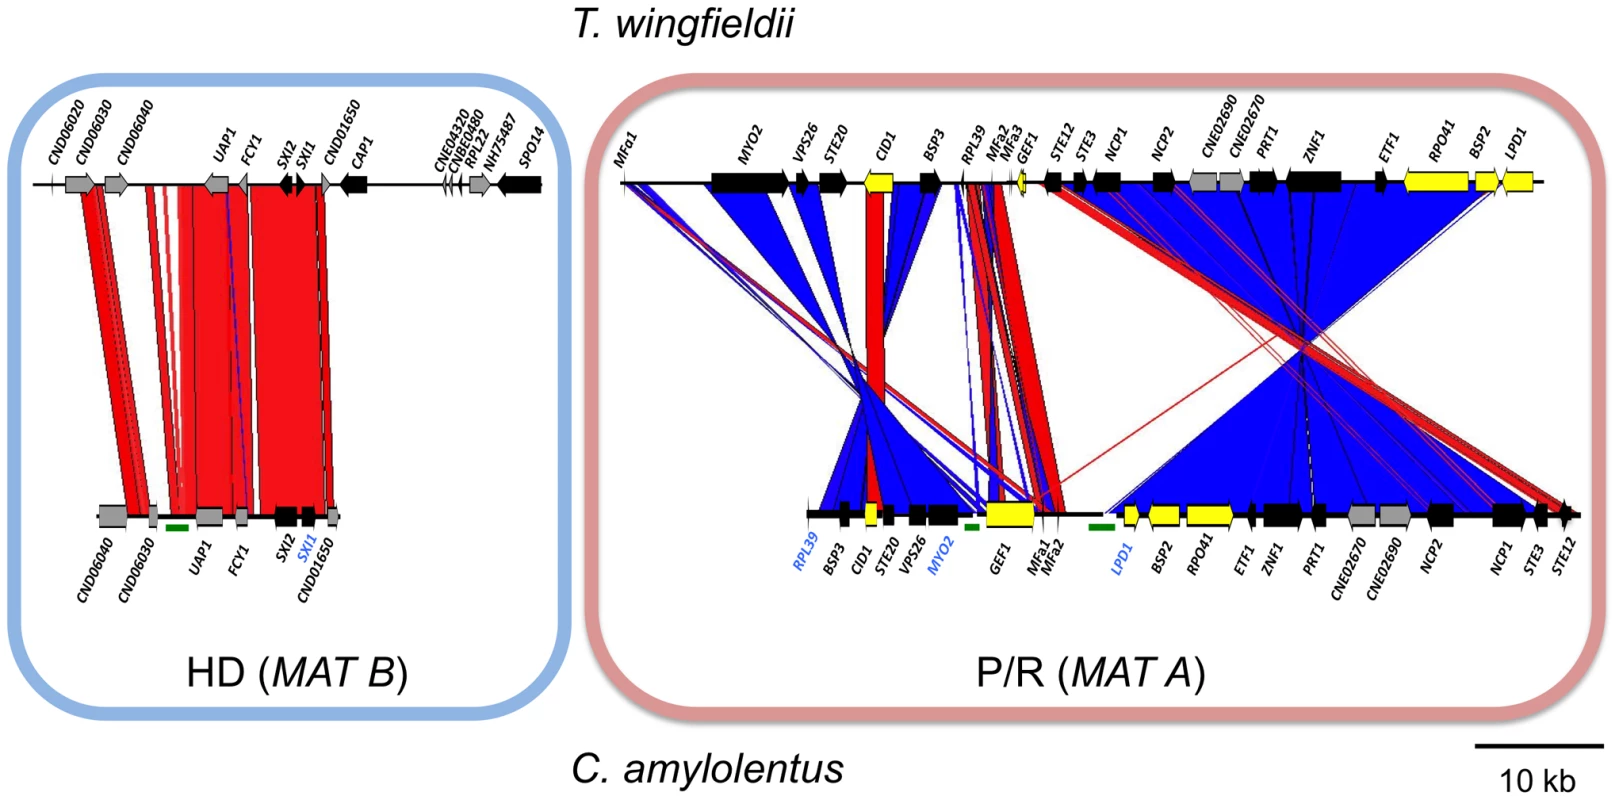 Synteny analysis of <i>MAT</i> sequences from <i>T. wingfieldii</i> and <i>C. amylolentus</i>.